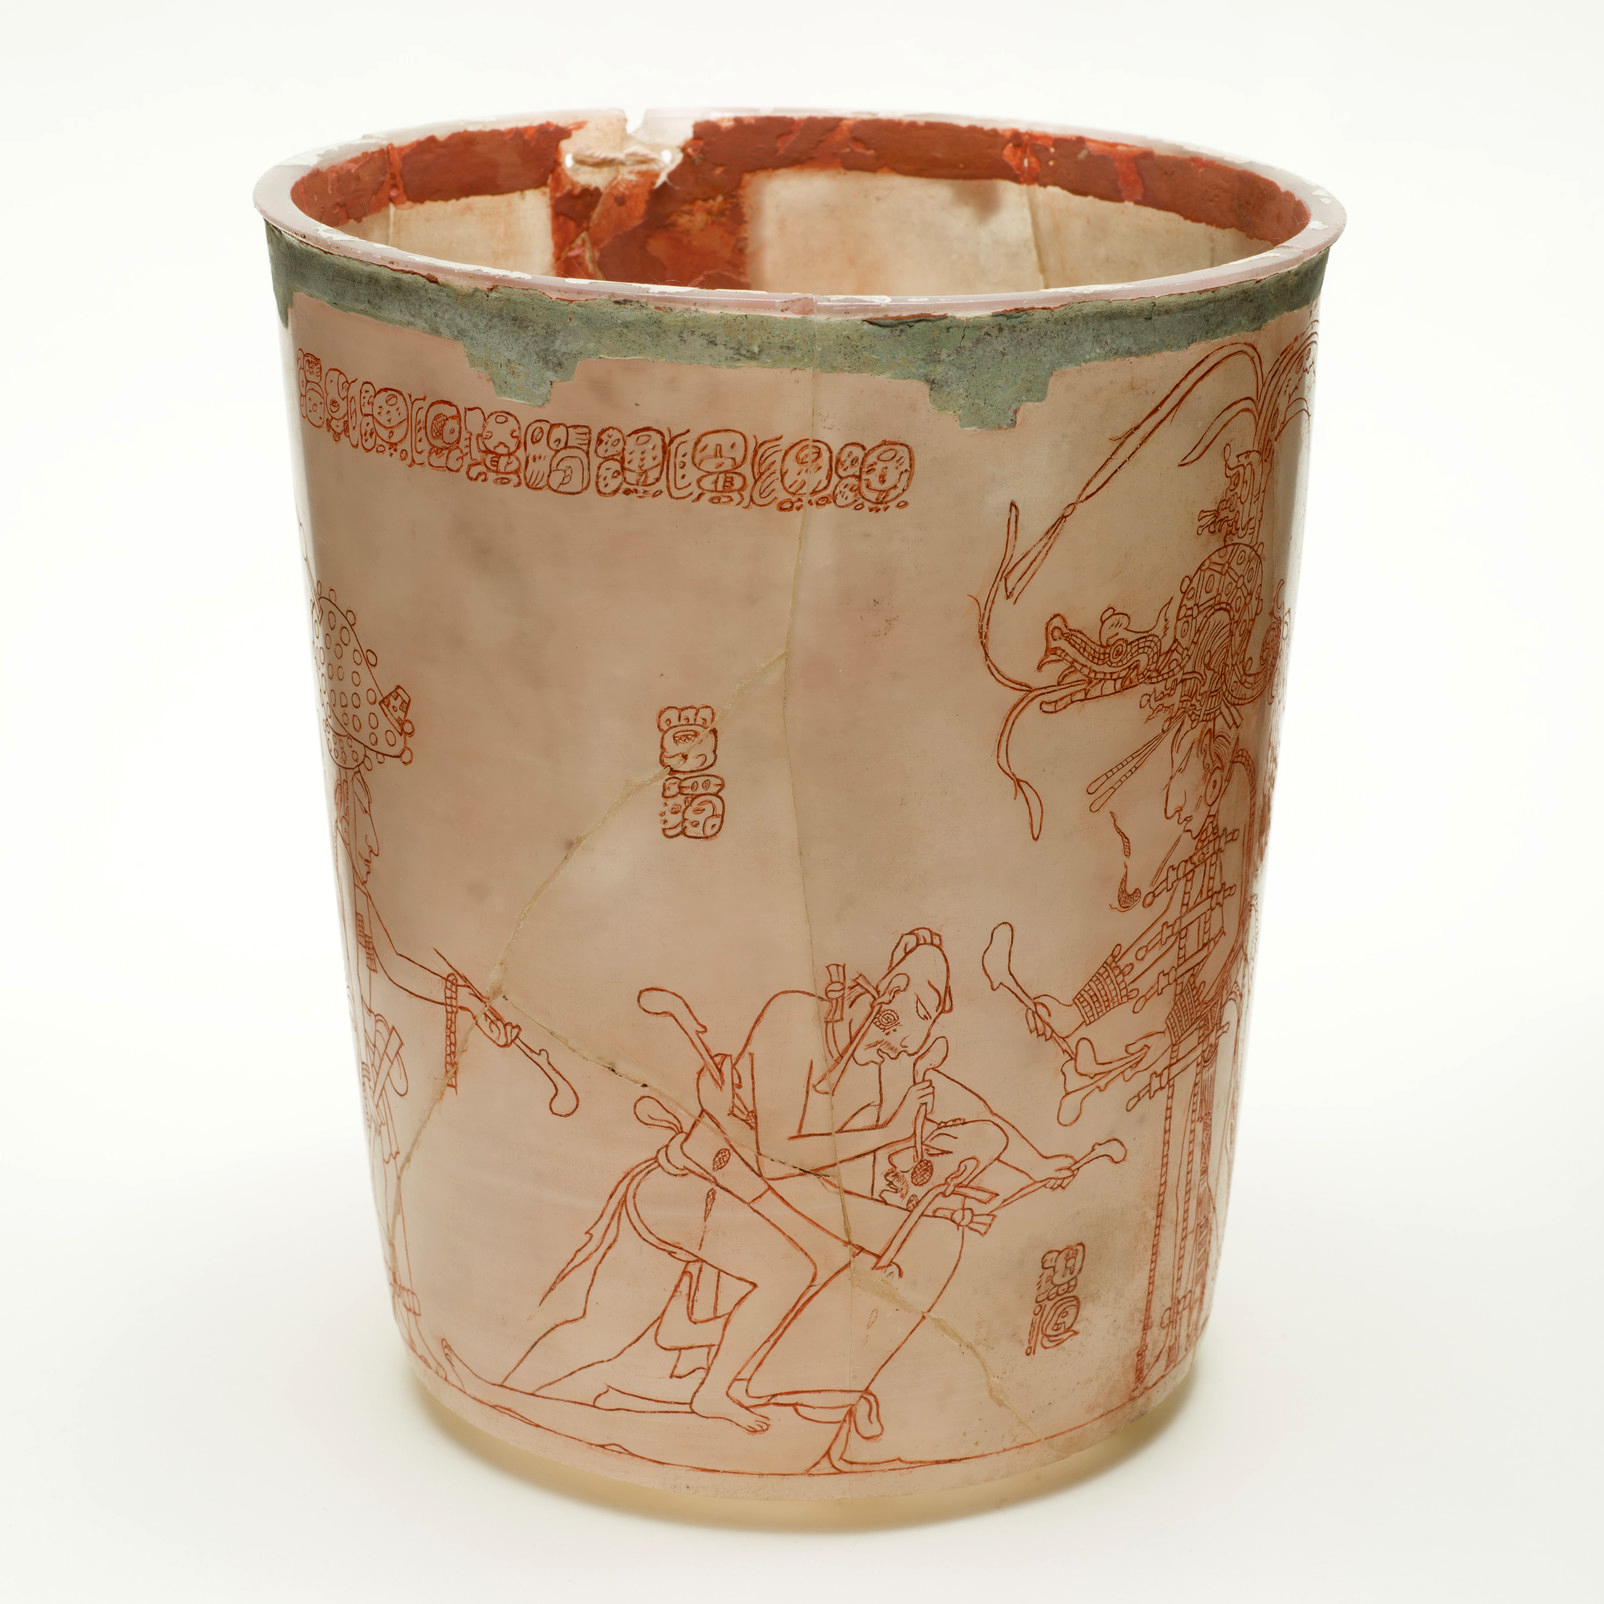 Сосуд с изображением битвы пленников. Майя, 600-900 гг. н.э. Коллекция Los Angeles County Museum of Art.